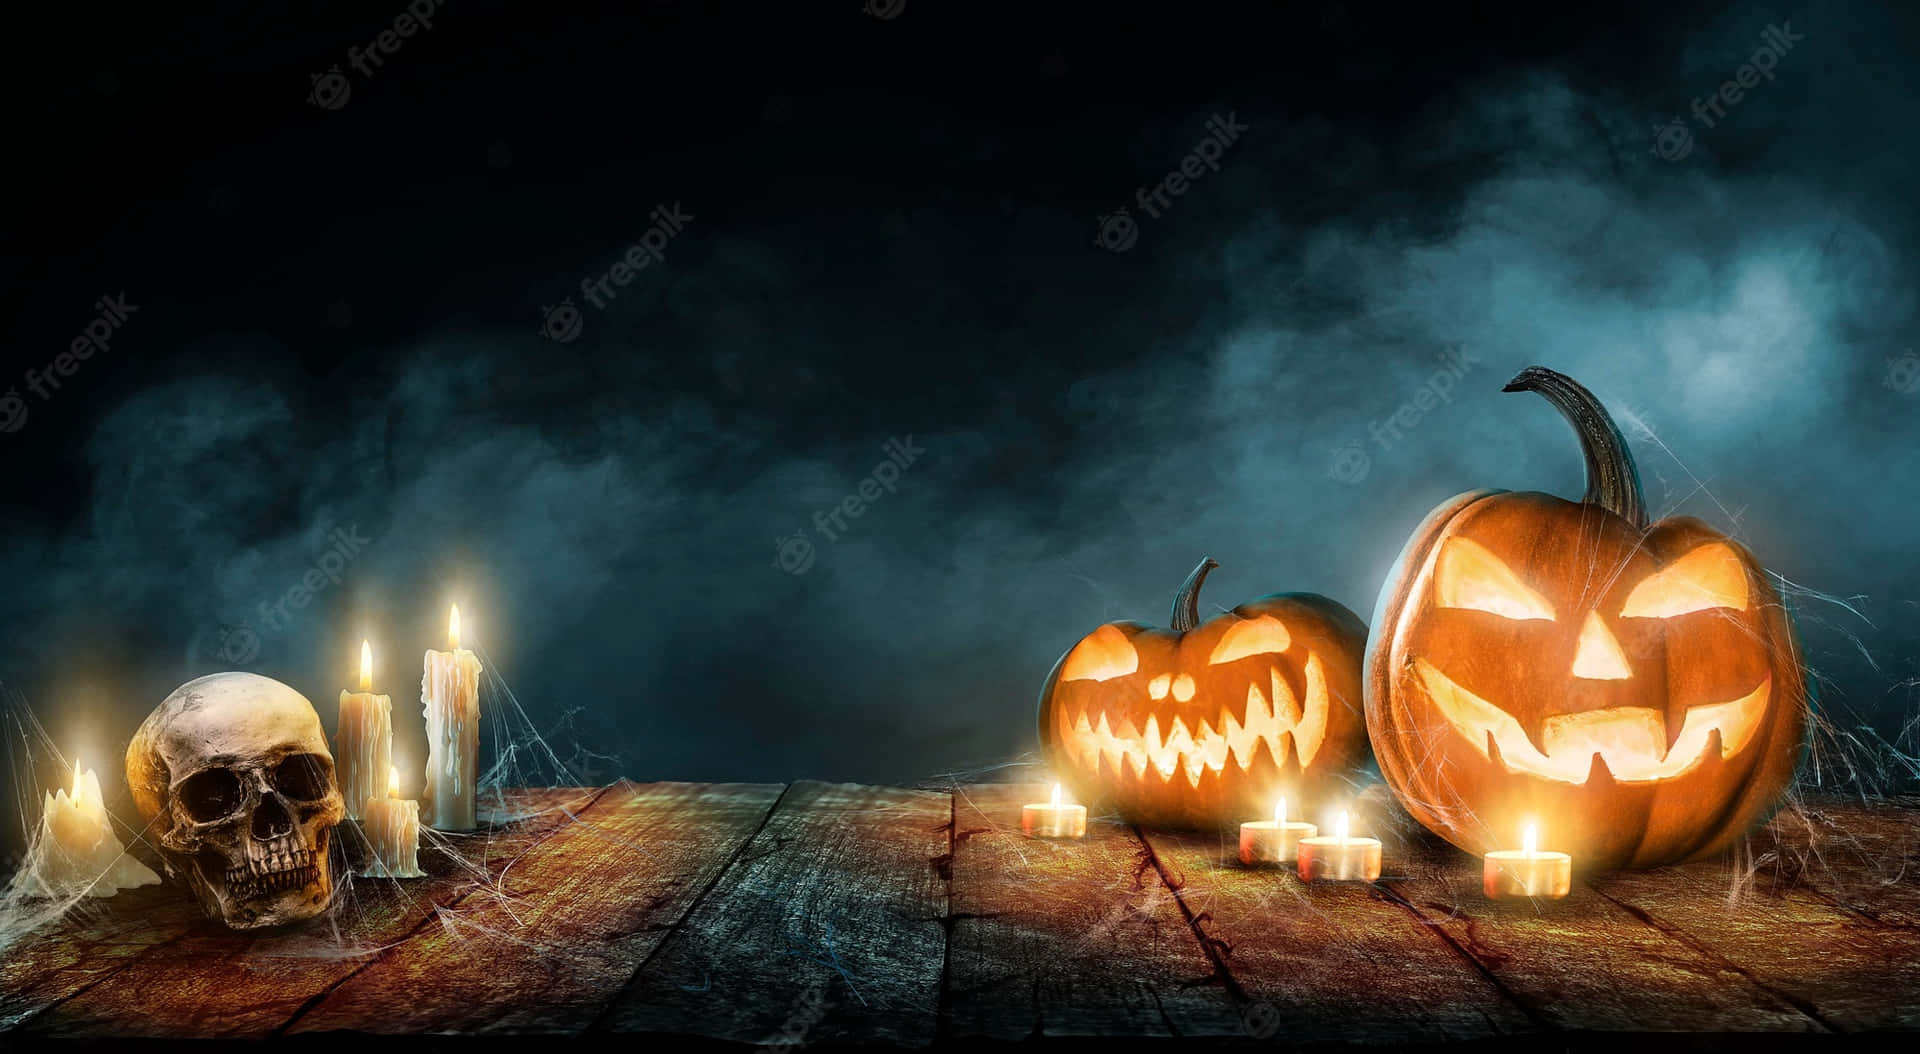 Enuhyggelig Og Farverig Neonlys Halloween-scene. Wallpaper